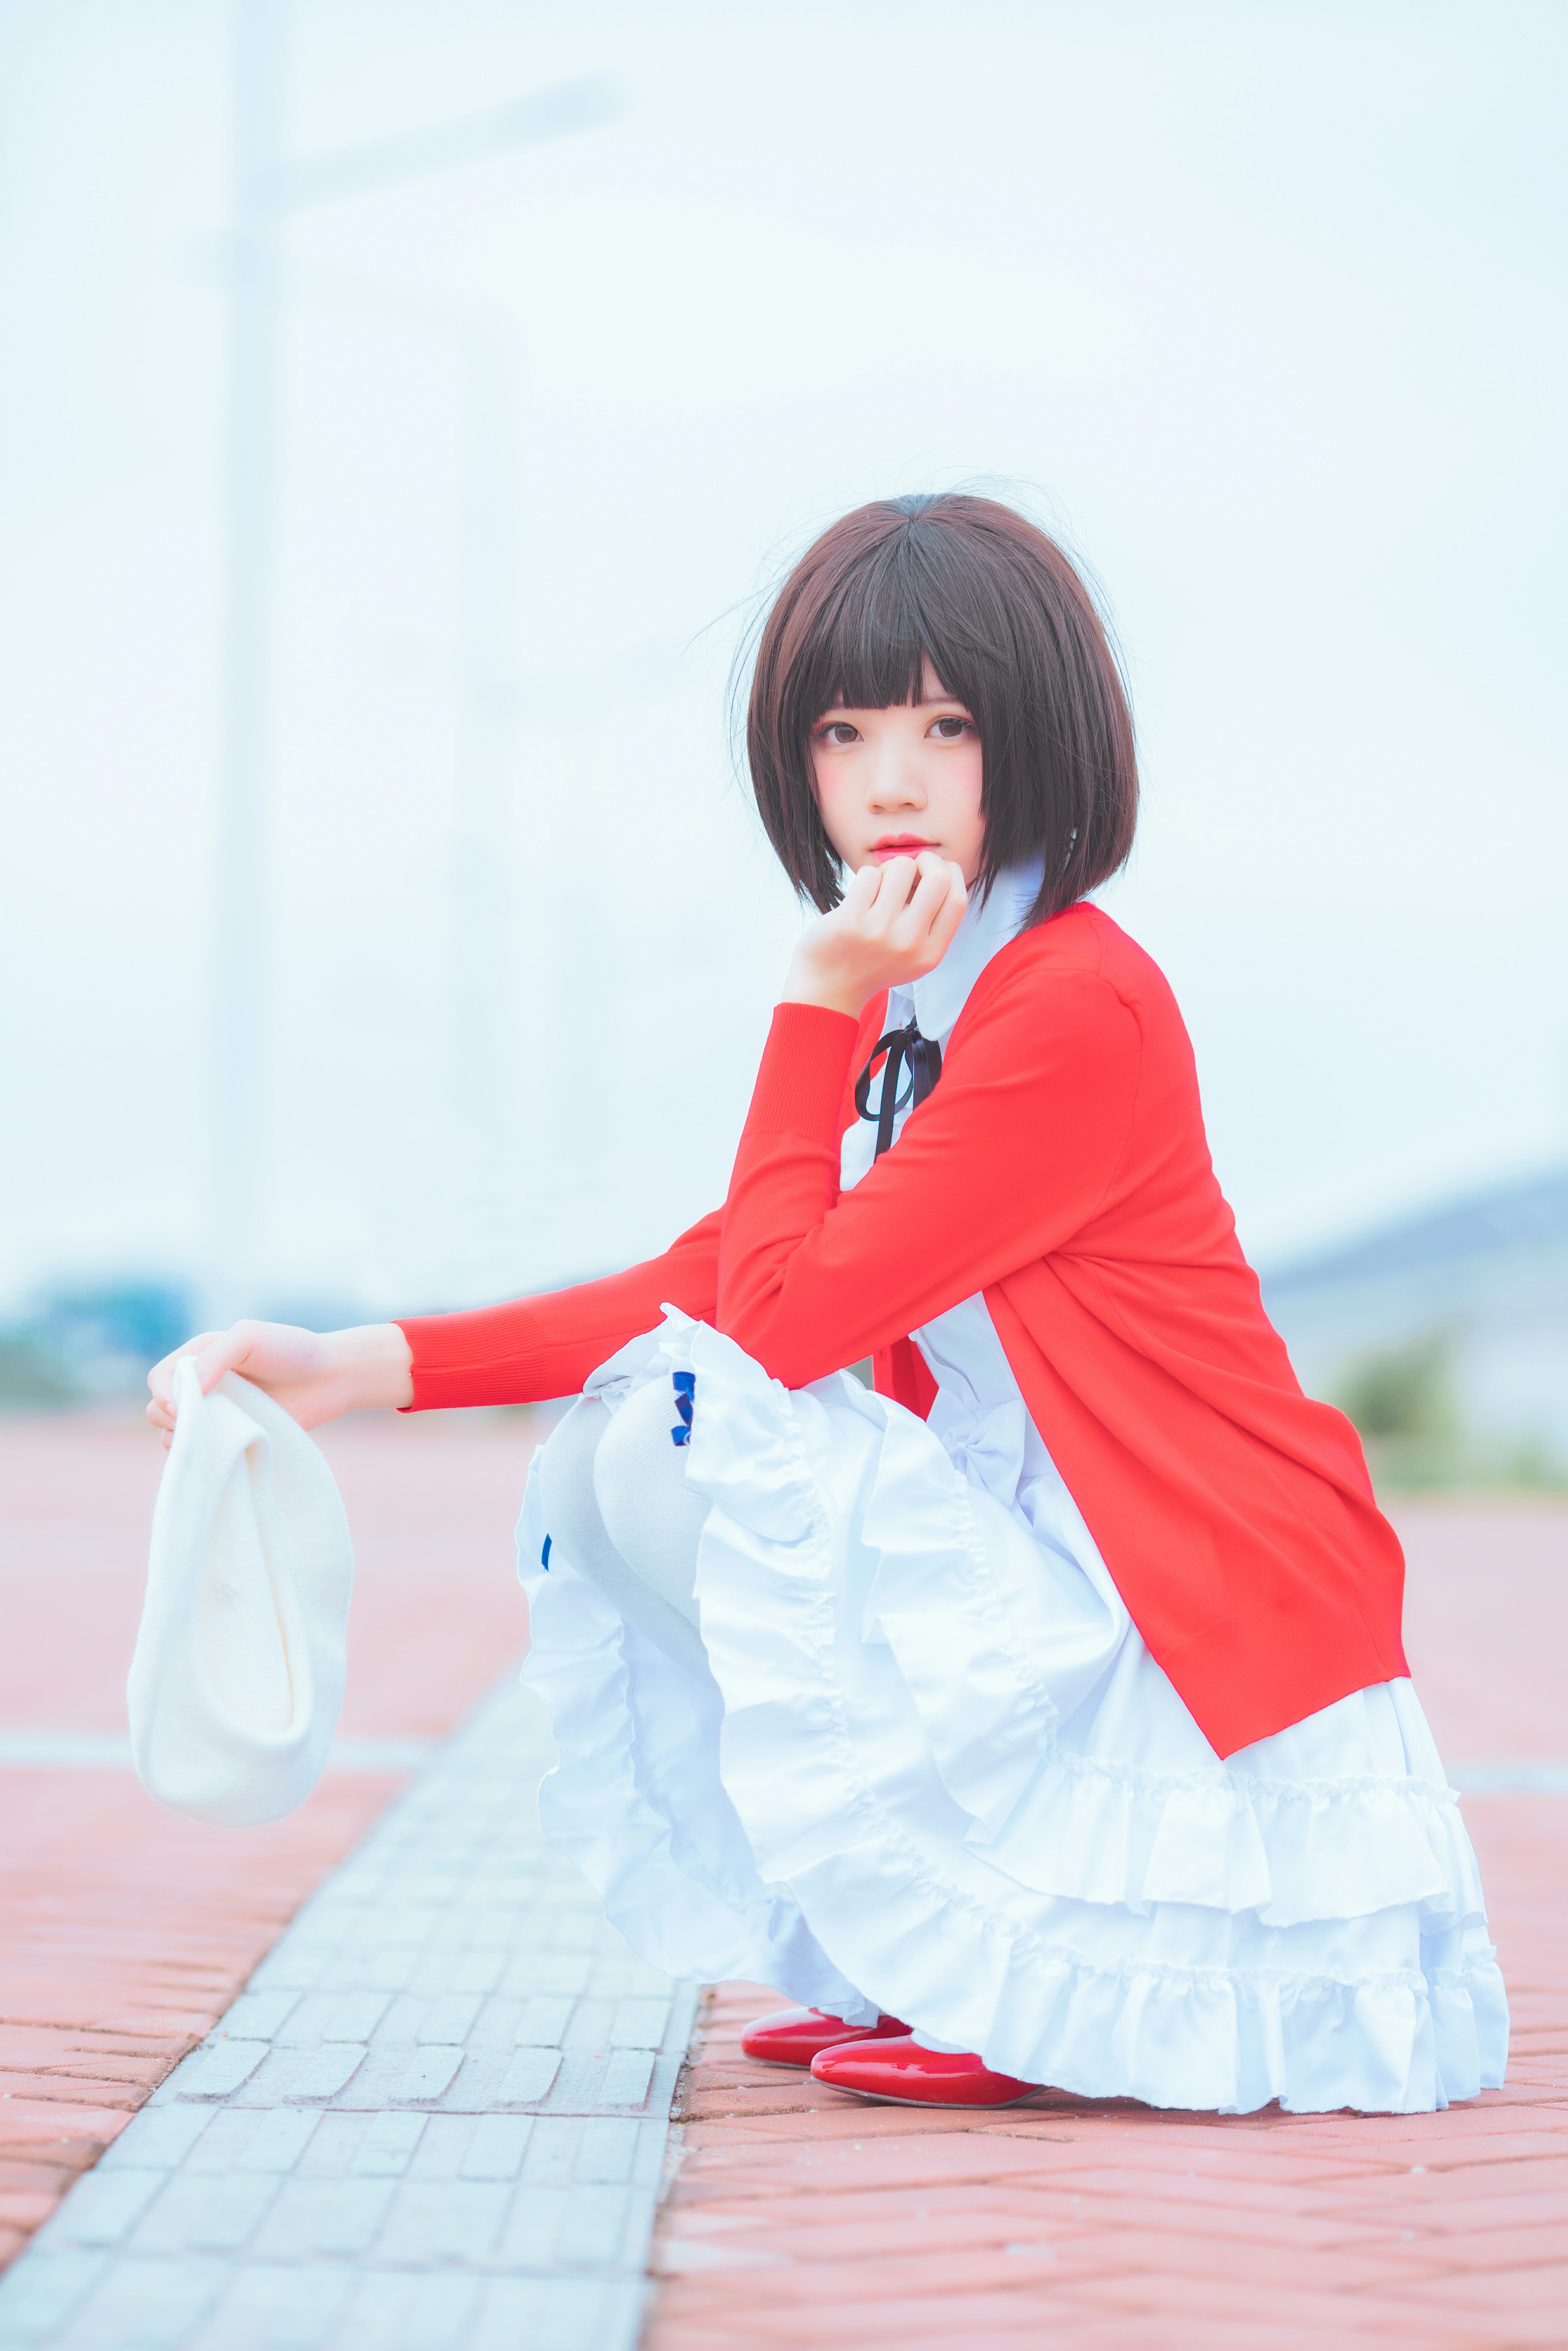 清纯少女 桜桃喵 红色外套与白色连衣裙加白色丝袜美腿街拍写真,0023